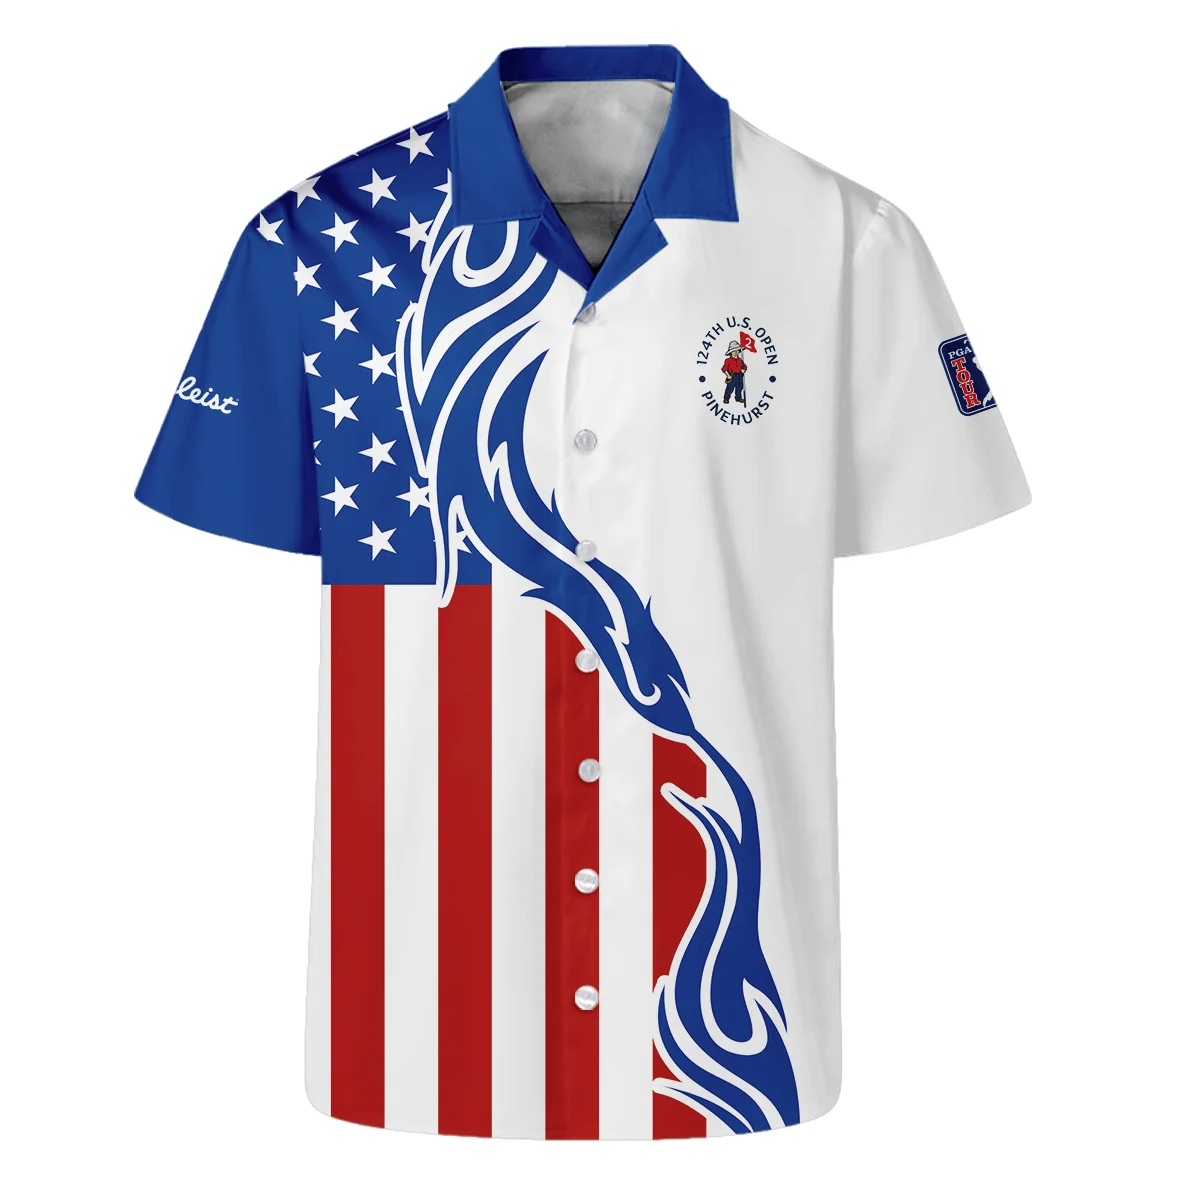 Golf Sport Titleist 124th U.S. Open Pinehurst Long Polo Shirt USA Flag Pattern Blue White All Over Print Long Polo Shirt For Men